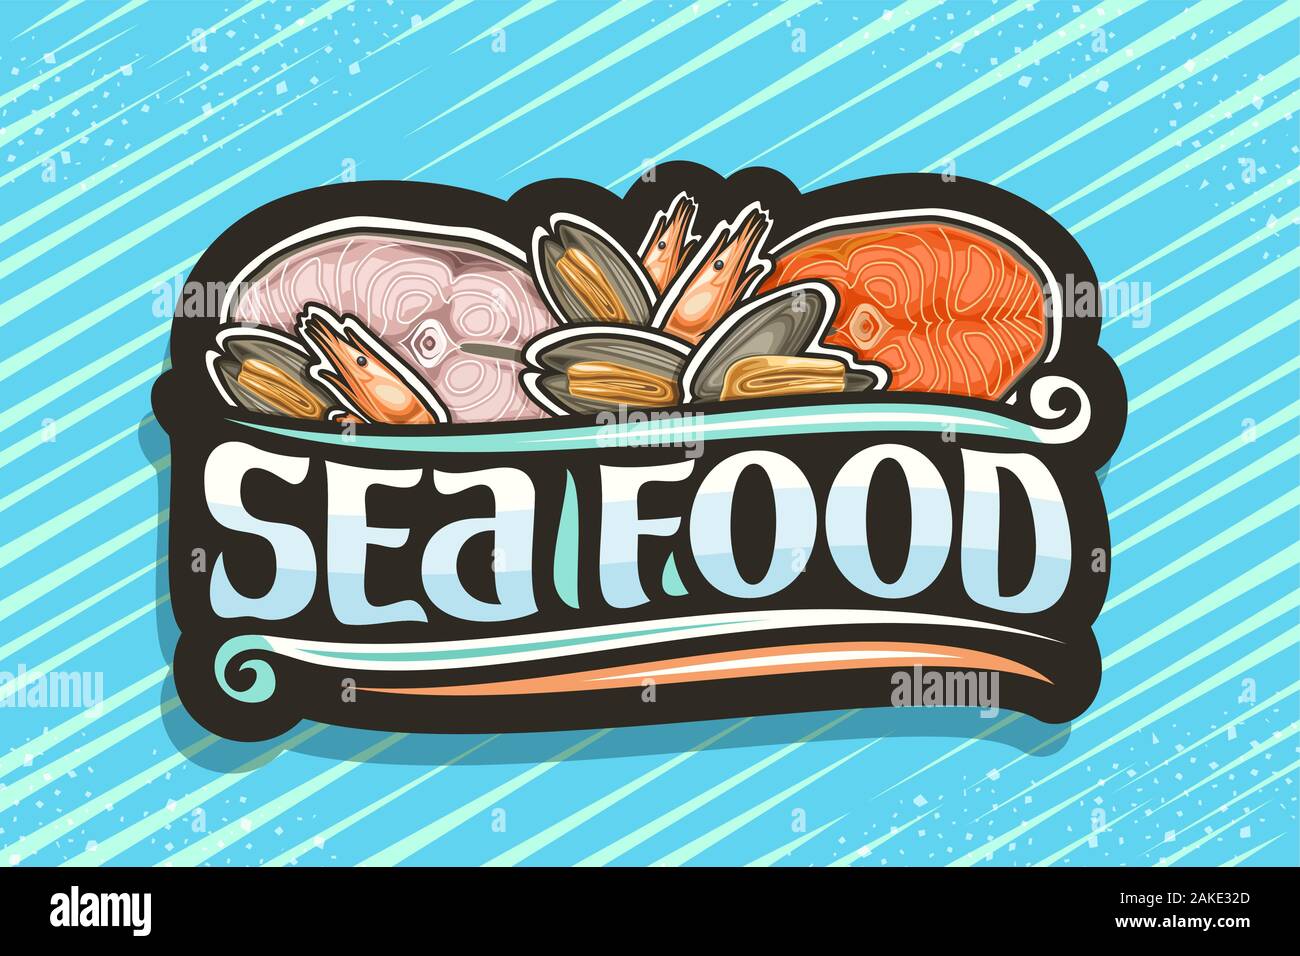 Vektor logo für frische Meeresfrüchte, schwarz dekorative Namensschild mit Abbildung der geschnittenen Teile der sortierten Fische, Gekochte Garnelen und viele geöffnete Muscheln, Stock Vektor